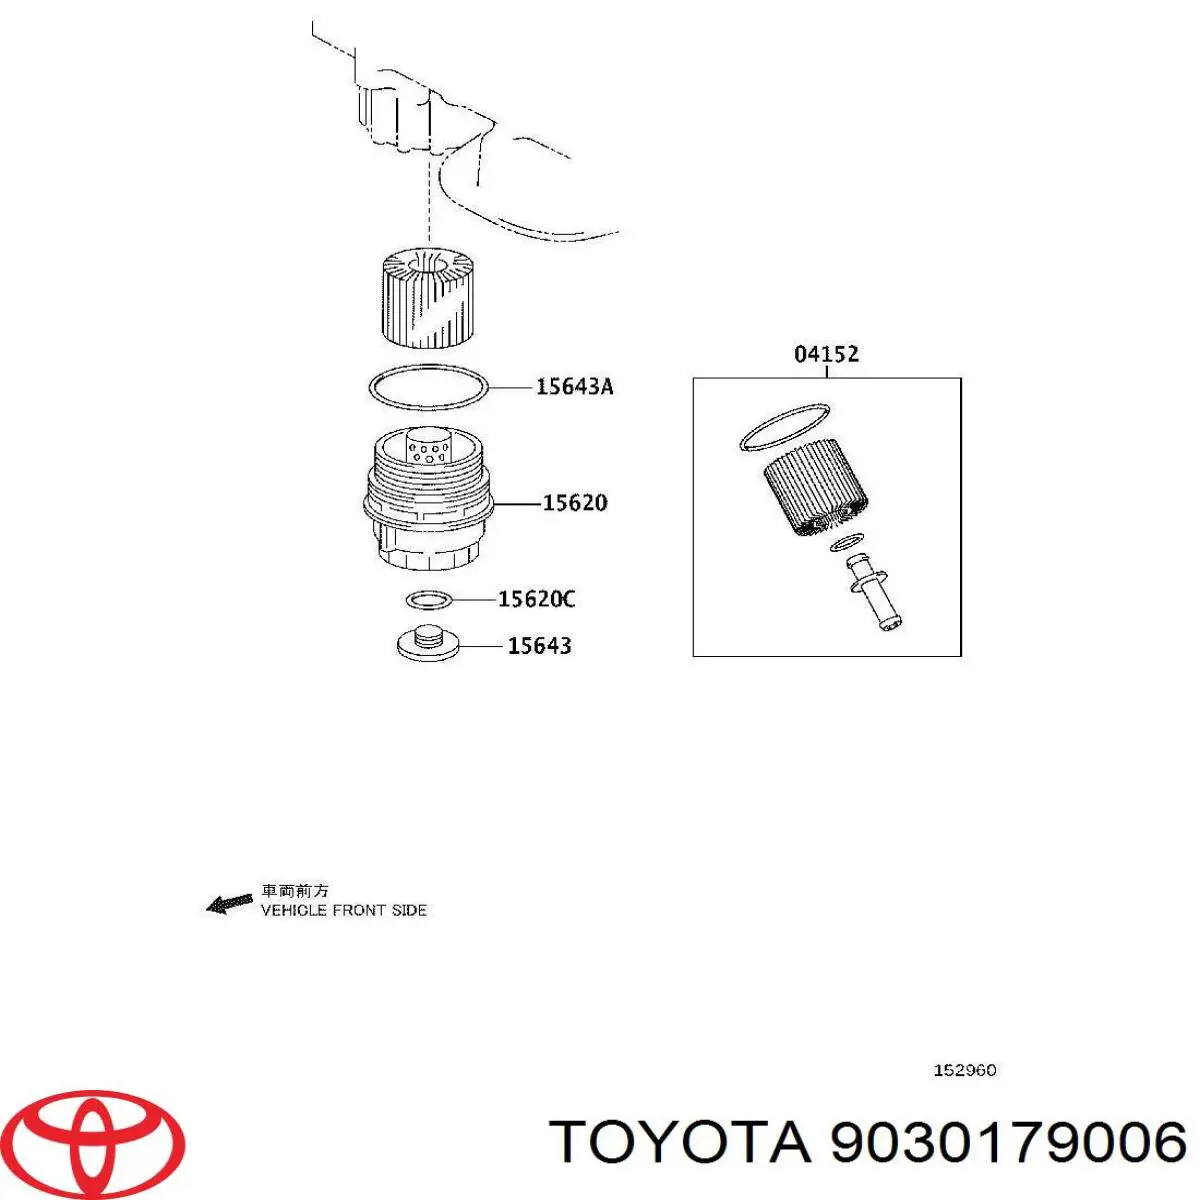 Кольцо крышки масляного фильтра внутреннее на Toyota Scion TC 